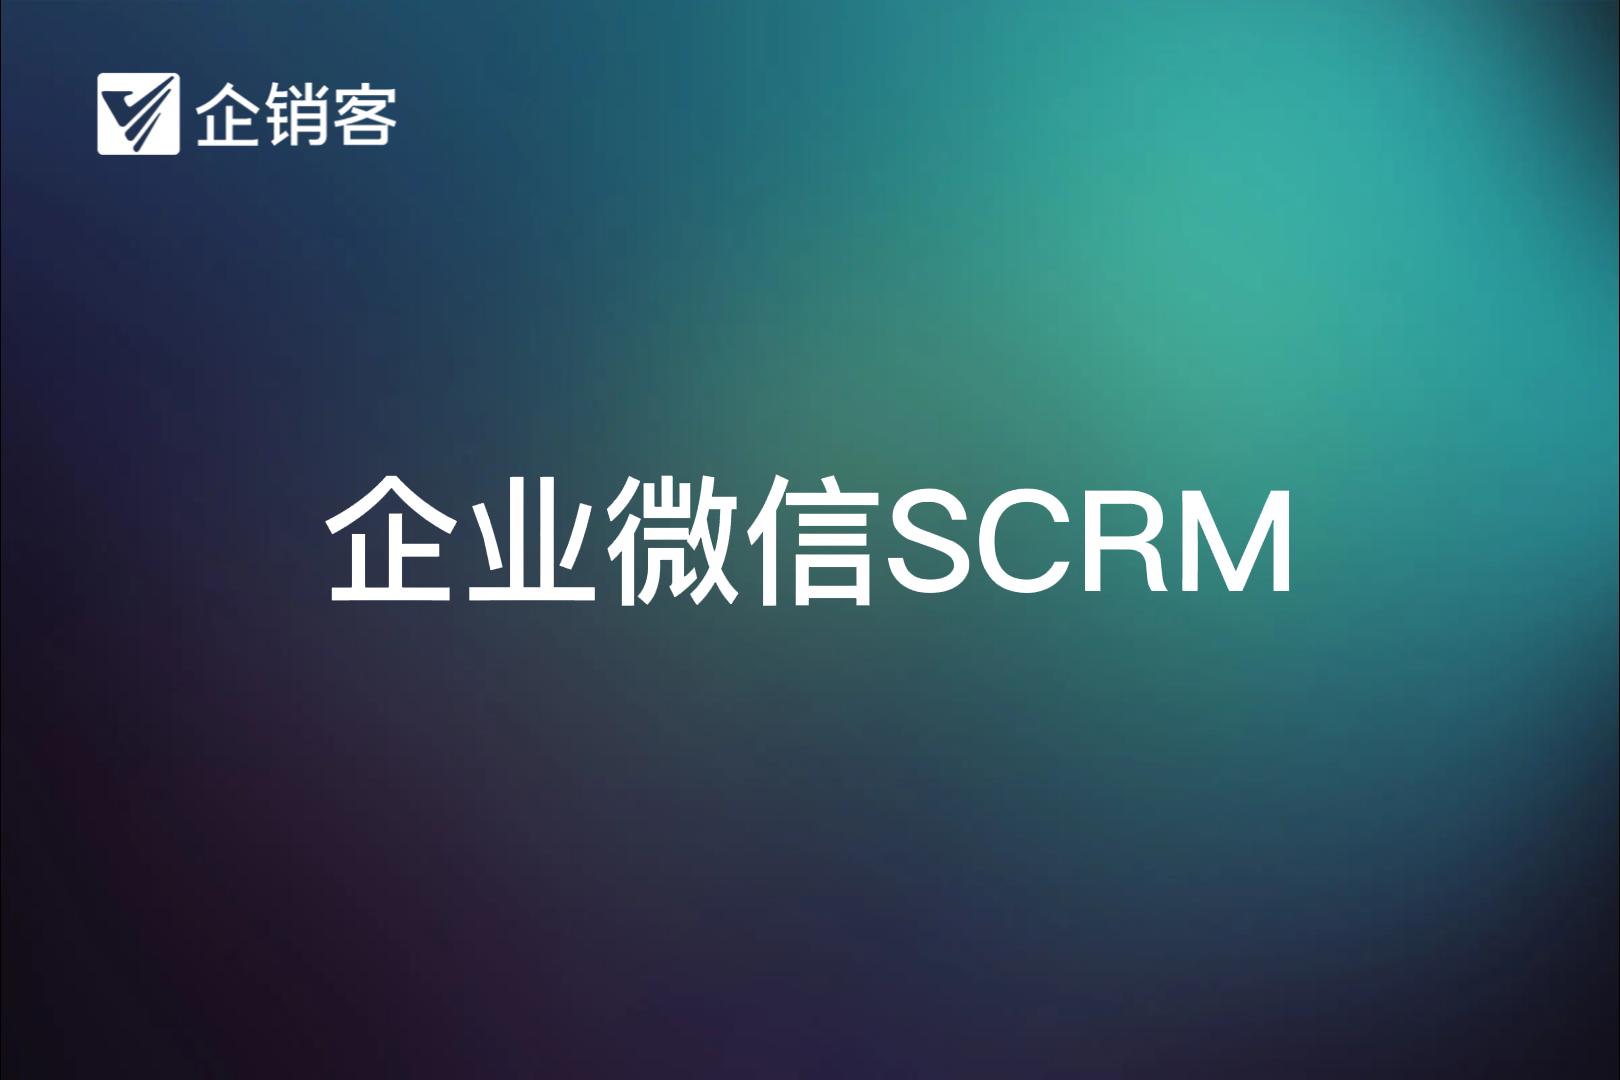 企销客-企业微信SCRM